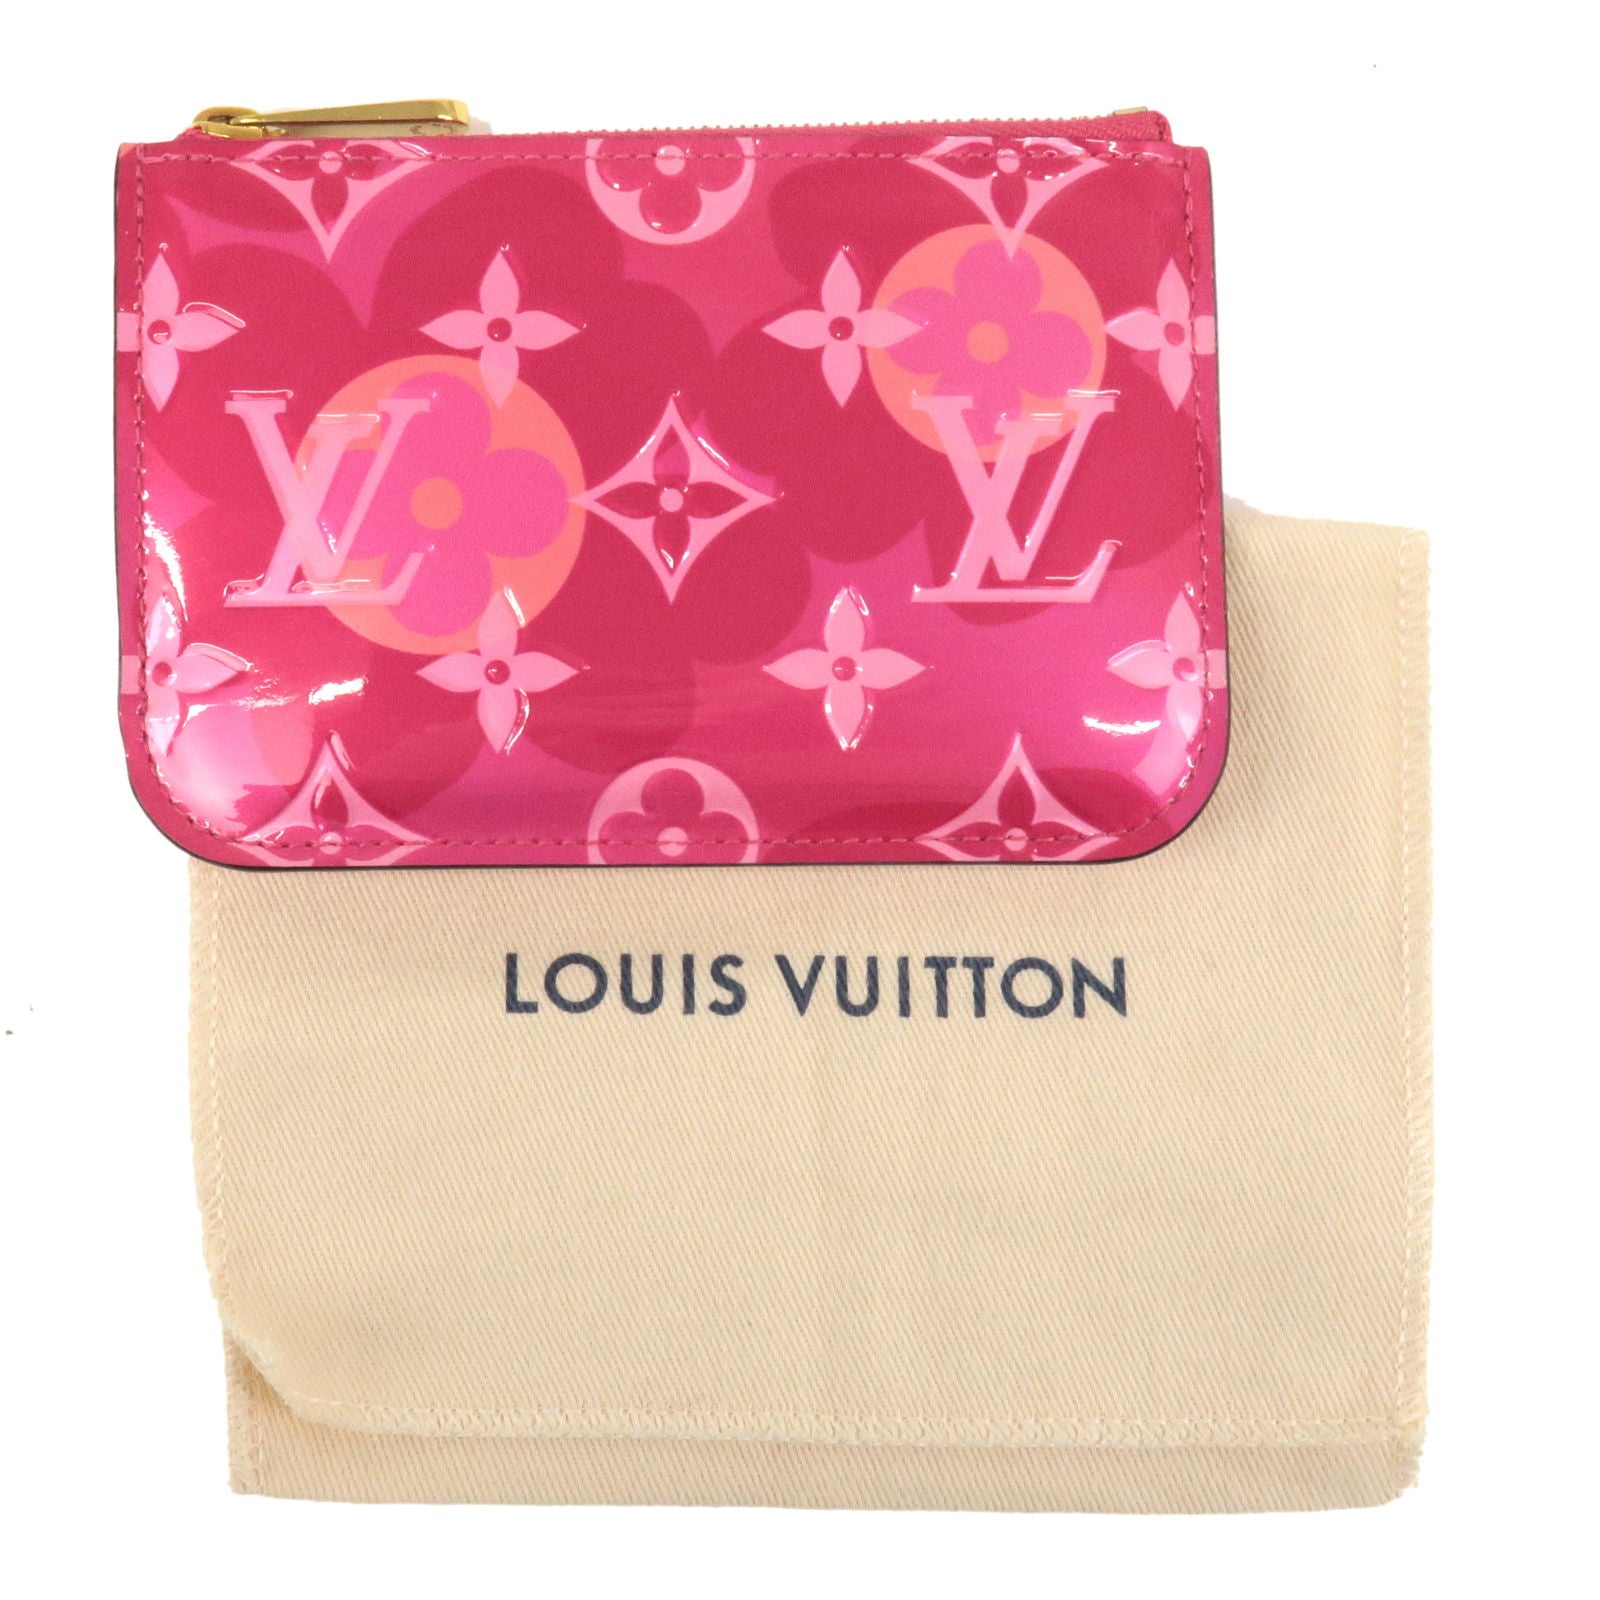 Closet case: Louis Vuitton